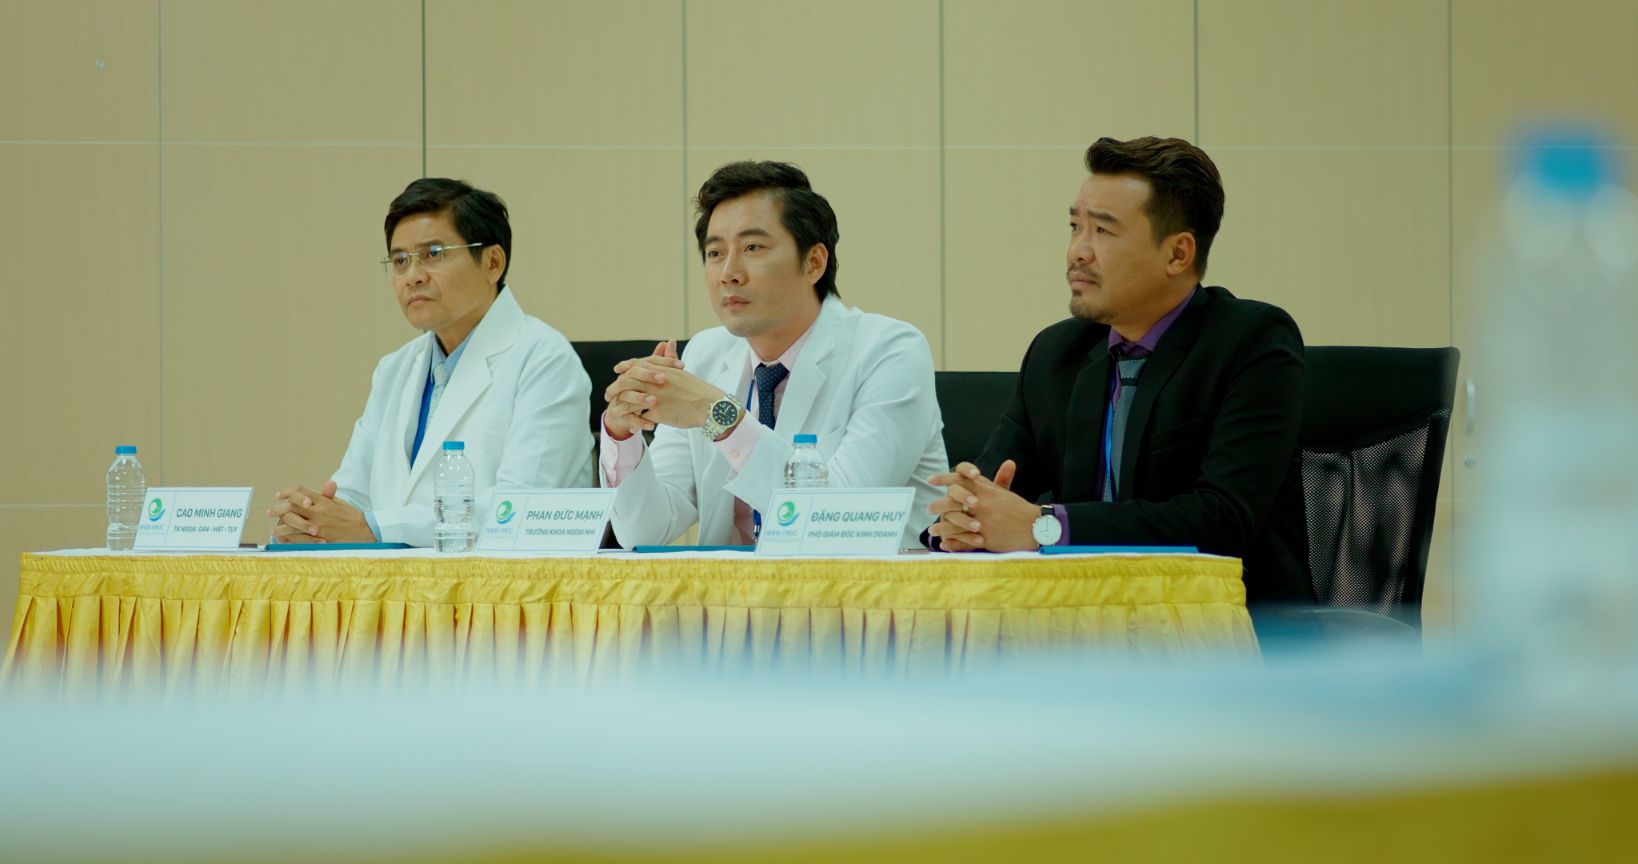 Ban điều hành bệnh viện đang lắng nghe Nam phát biểu Trần Phong lấy nước mắt khán giả ở tập đầu ‘Doctor Lof   Bác Sĩ Hạnh Phúc’